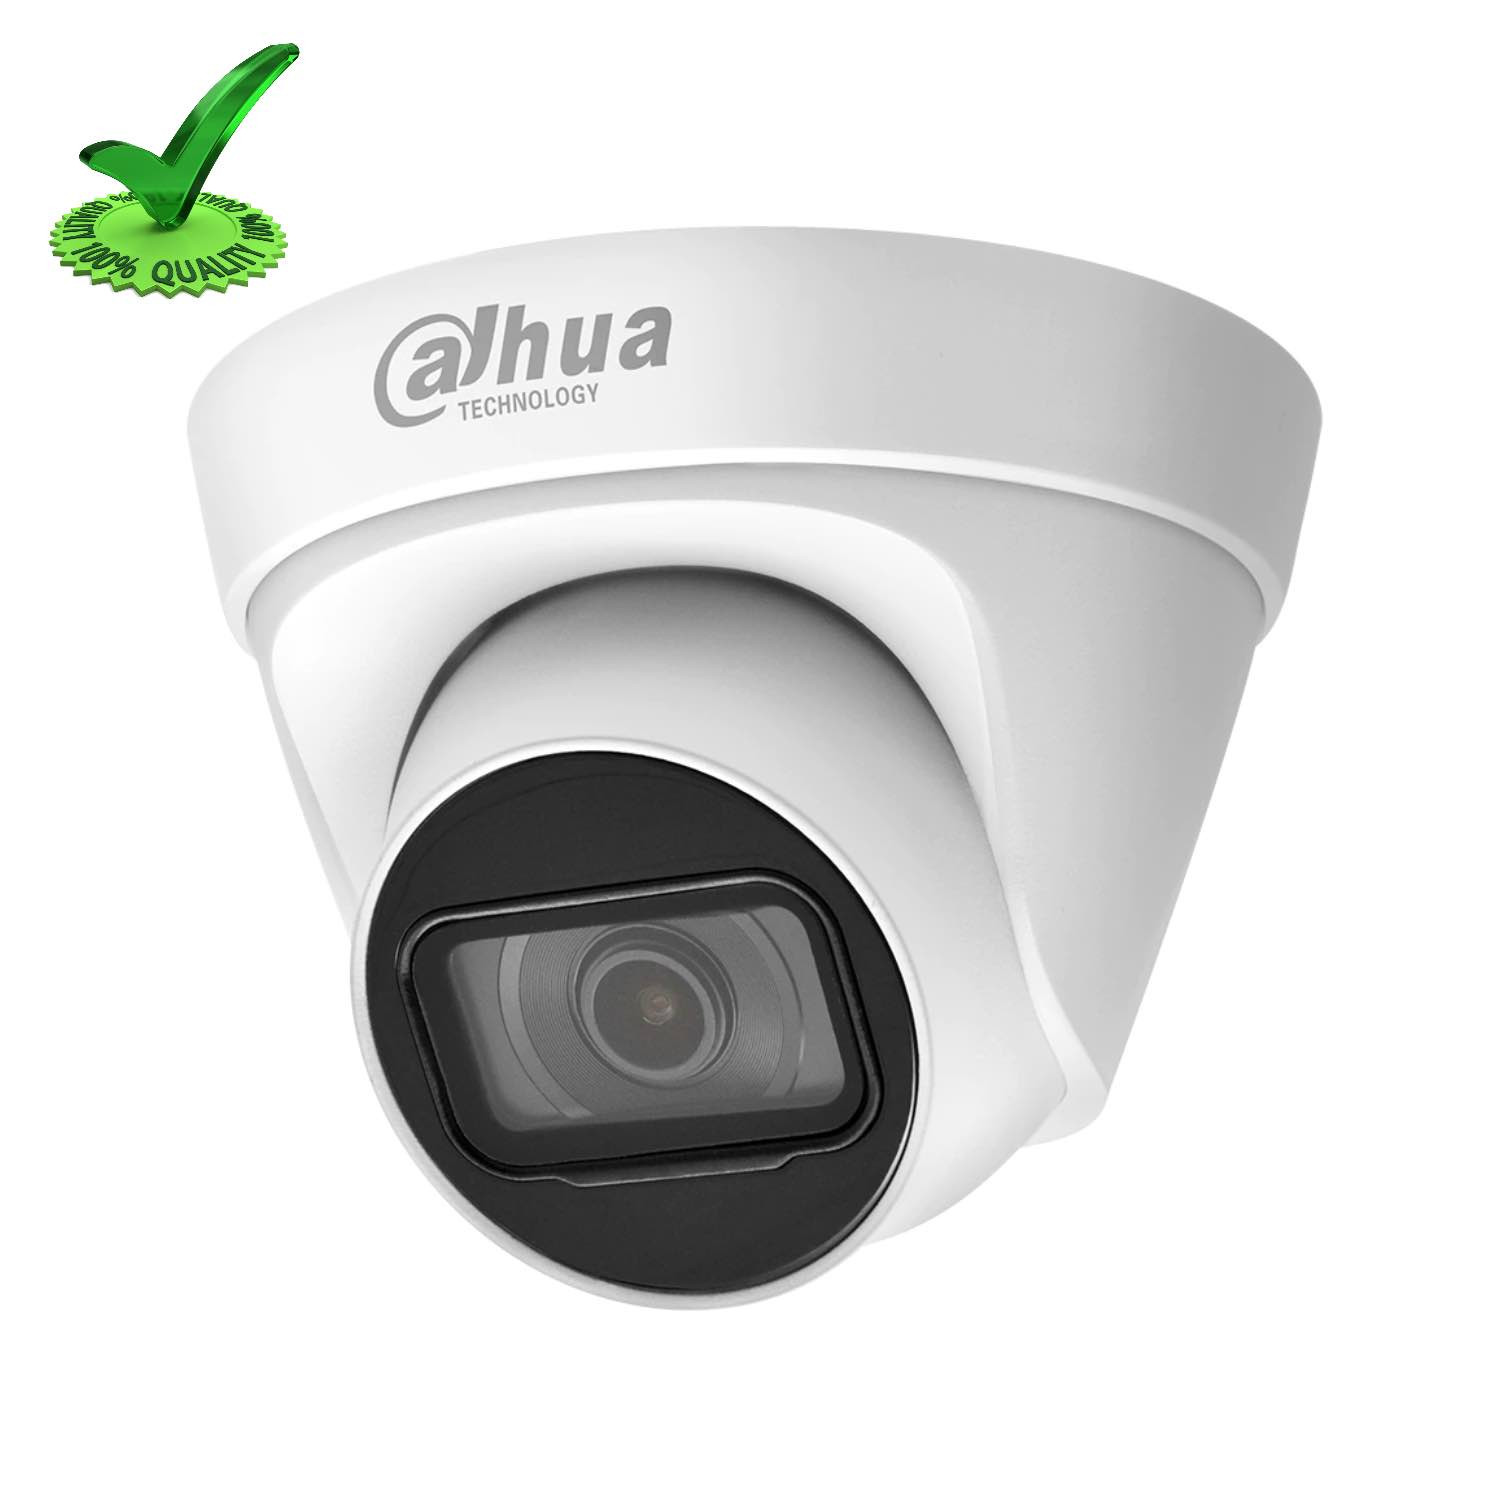 Dahua DH-IPC-HDW1431T1P-S4 4MP IP Dome Camera